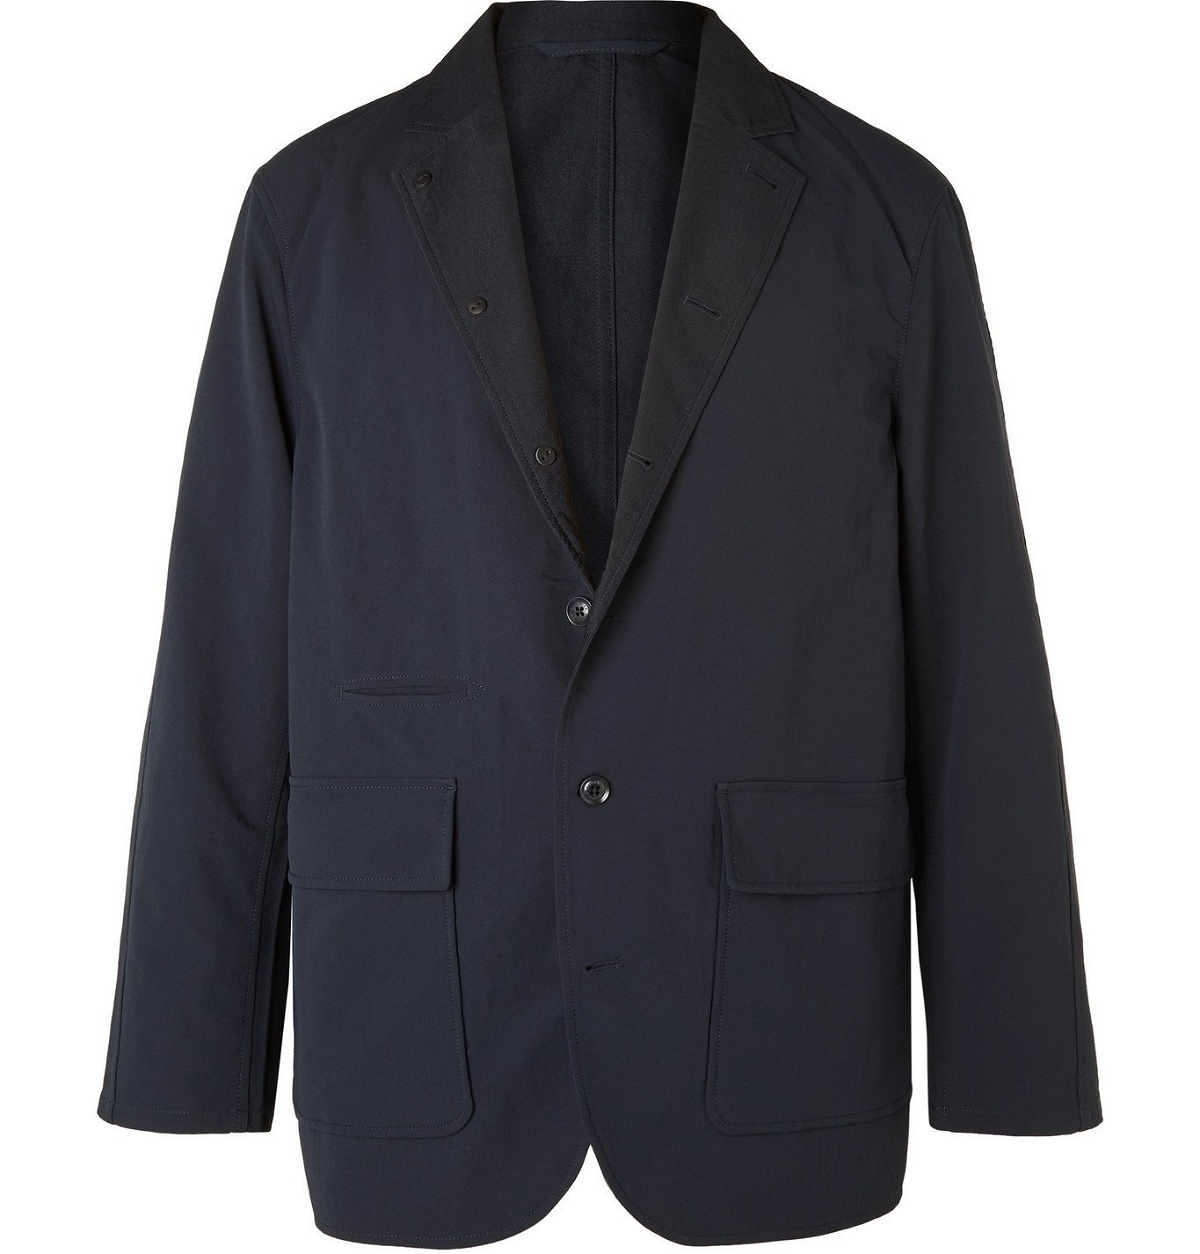 nanamica - Slim-Fit ALPHADRY Suit Jacket - Blue Nanamica